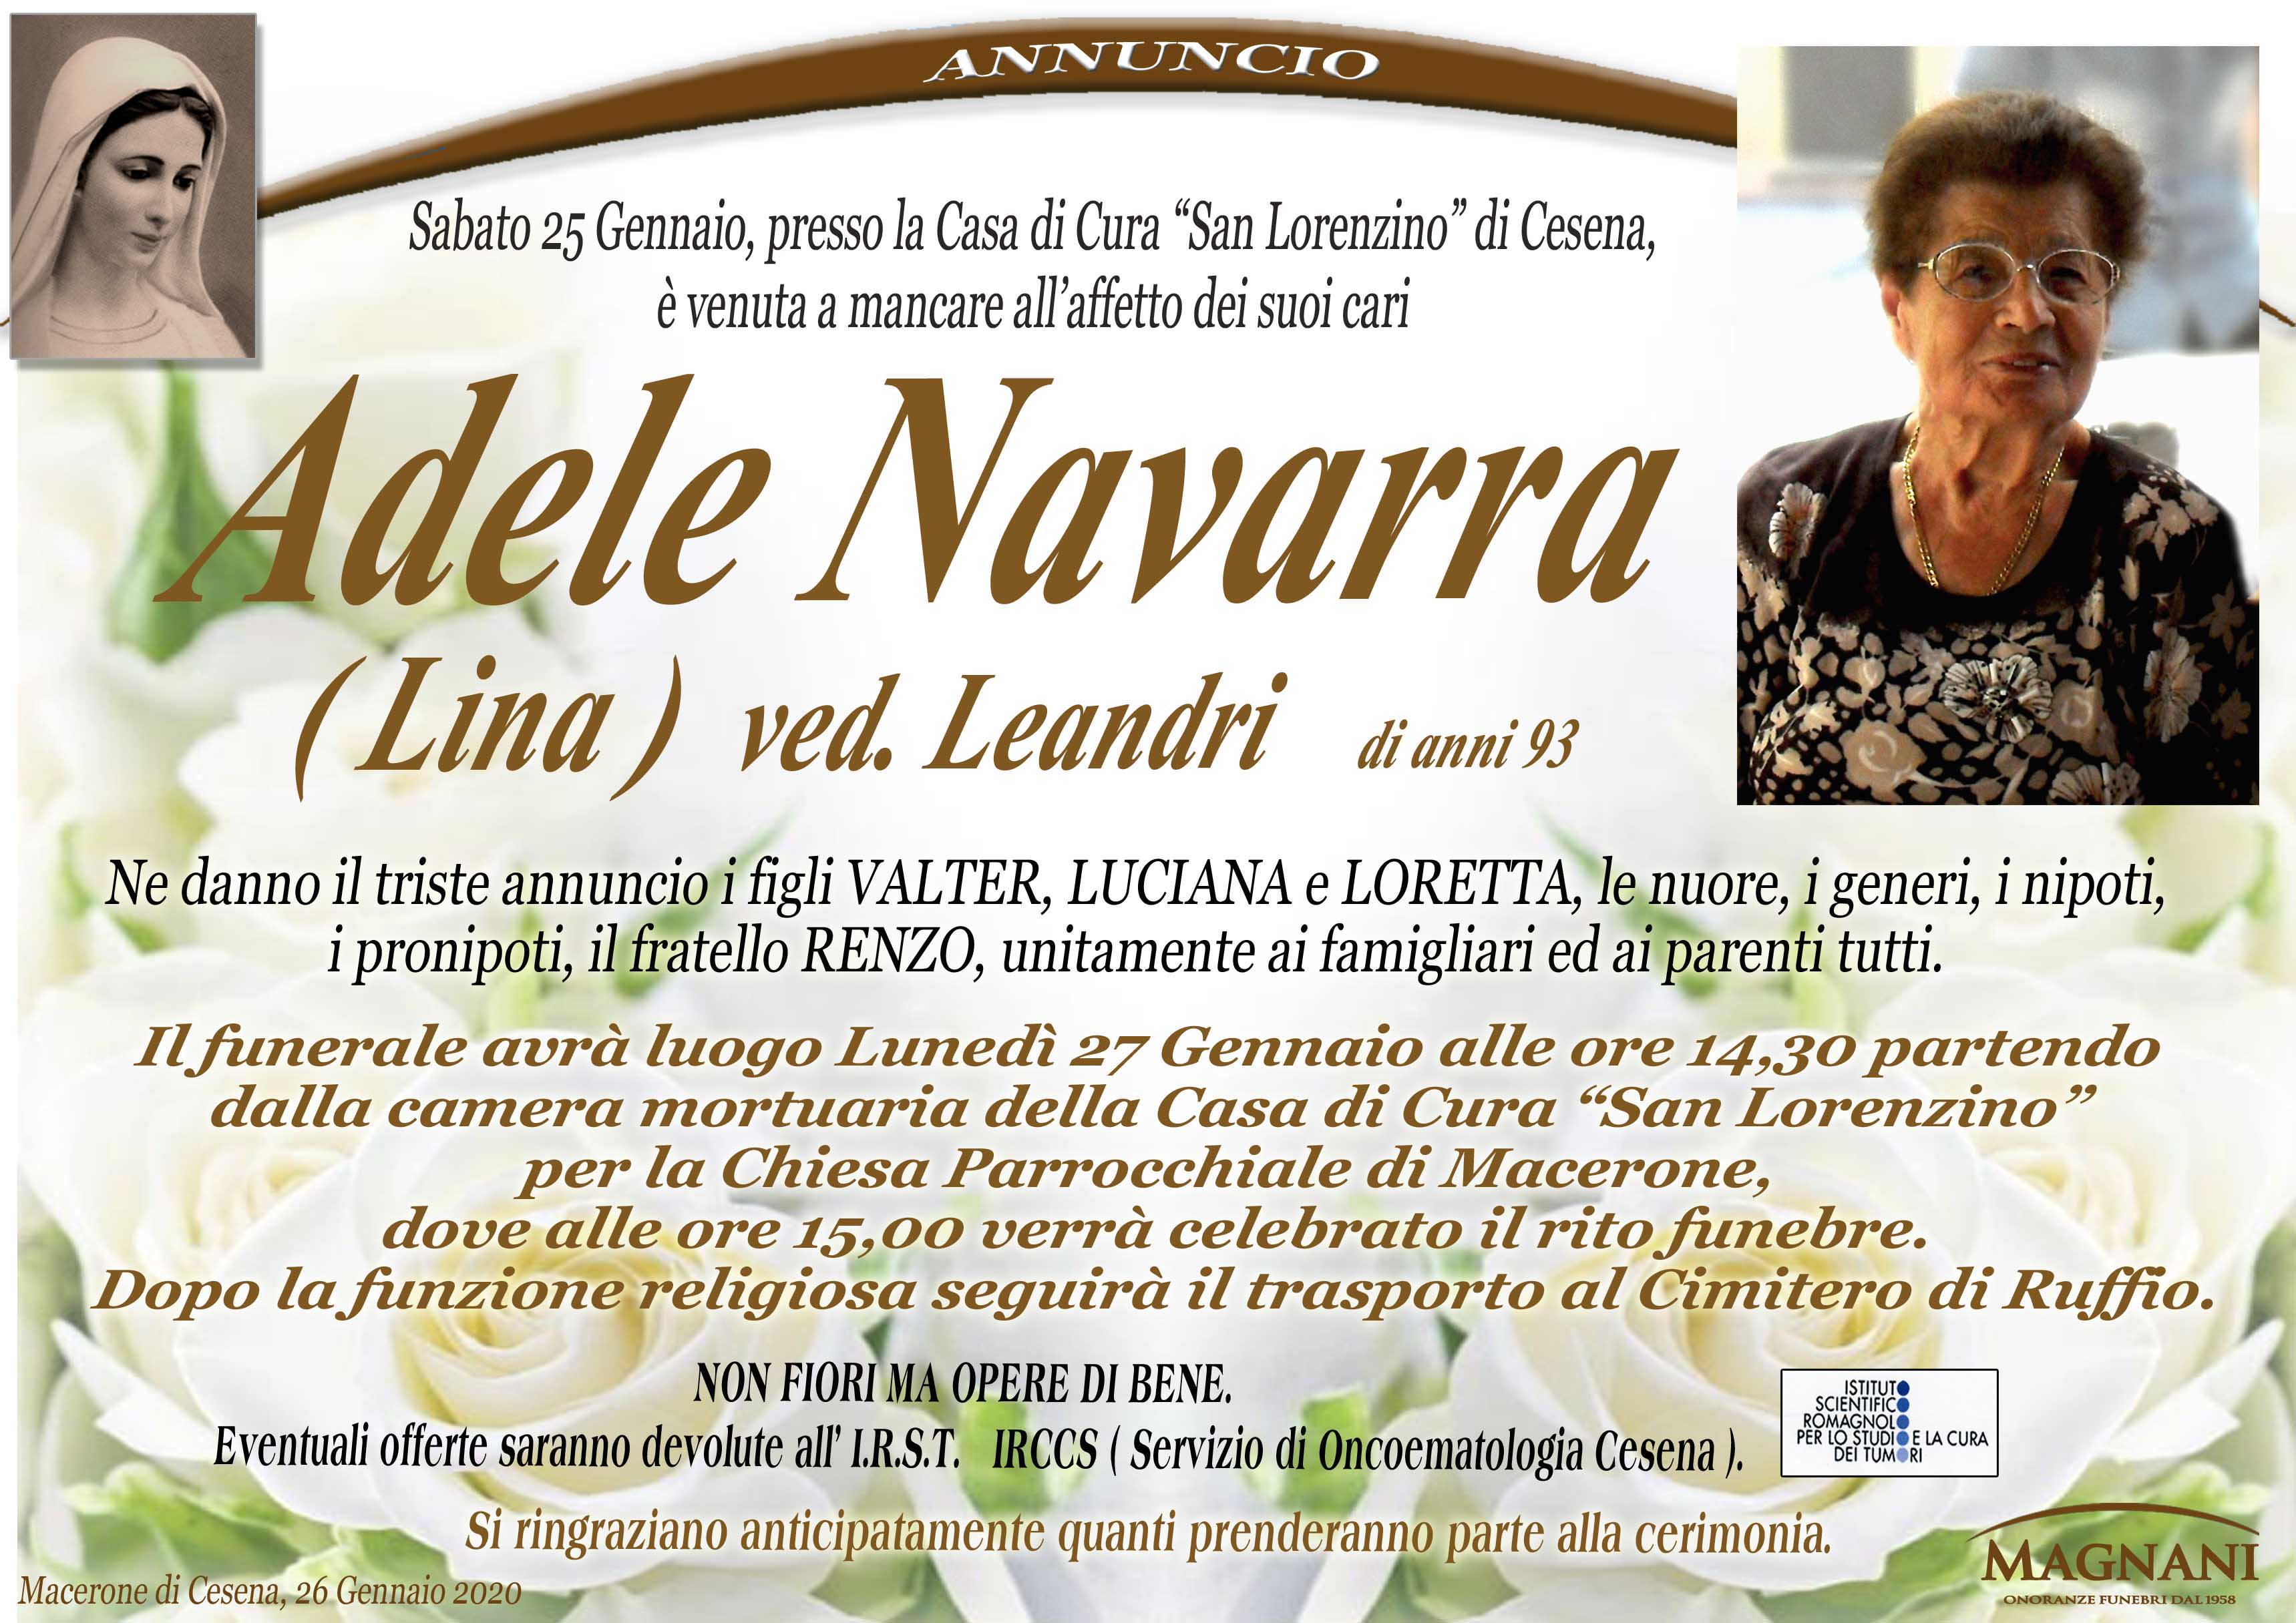 Adele Navarra